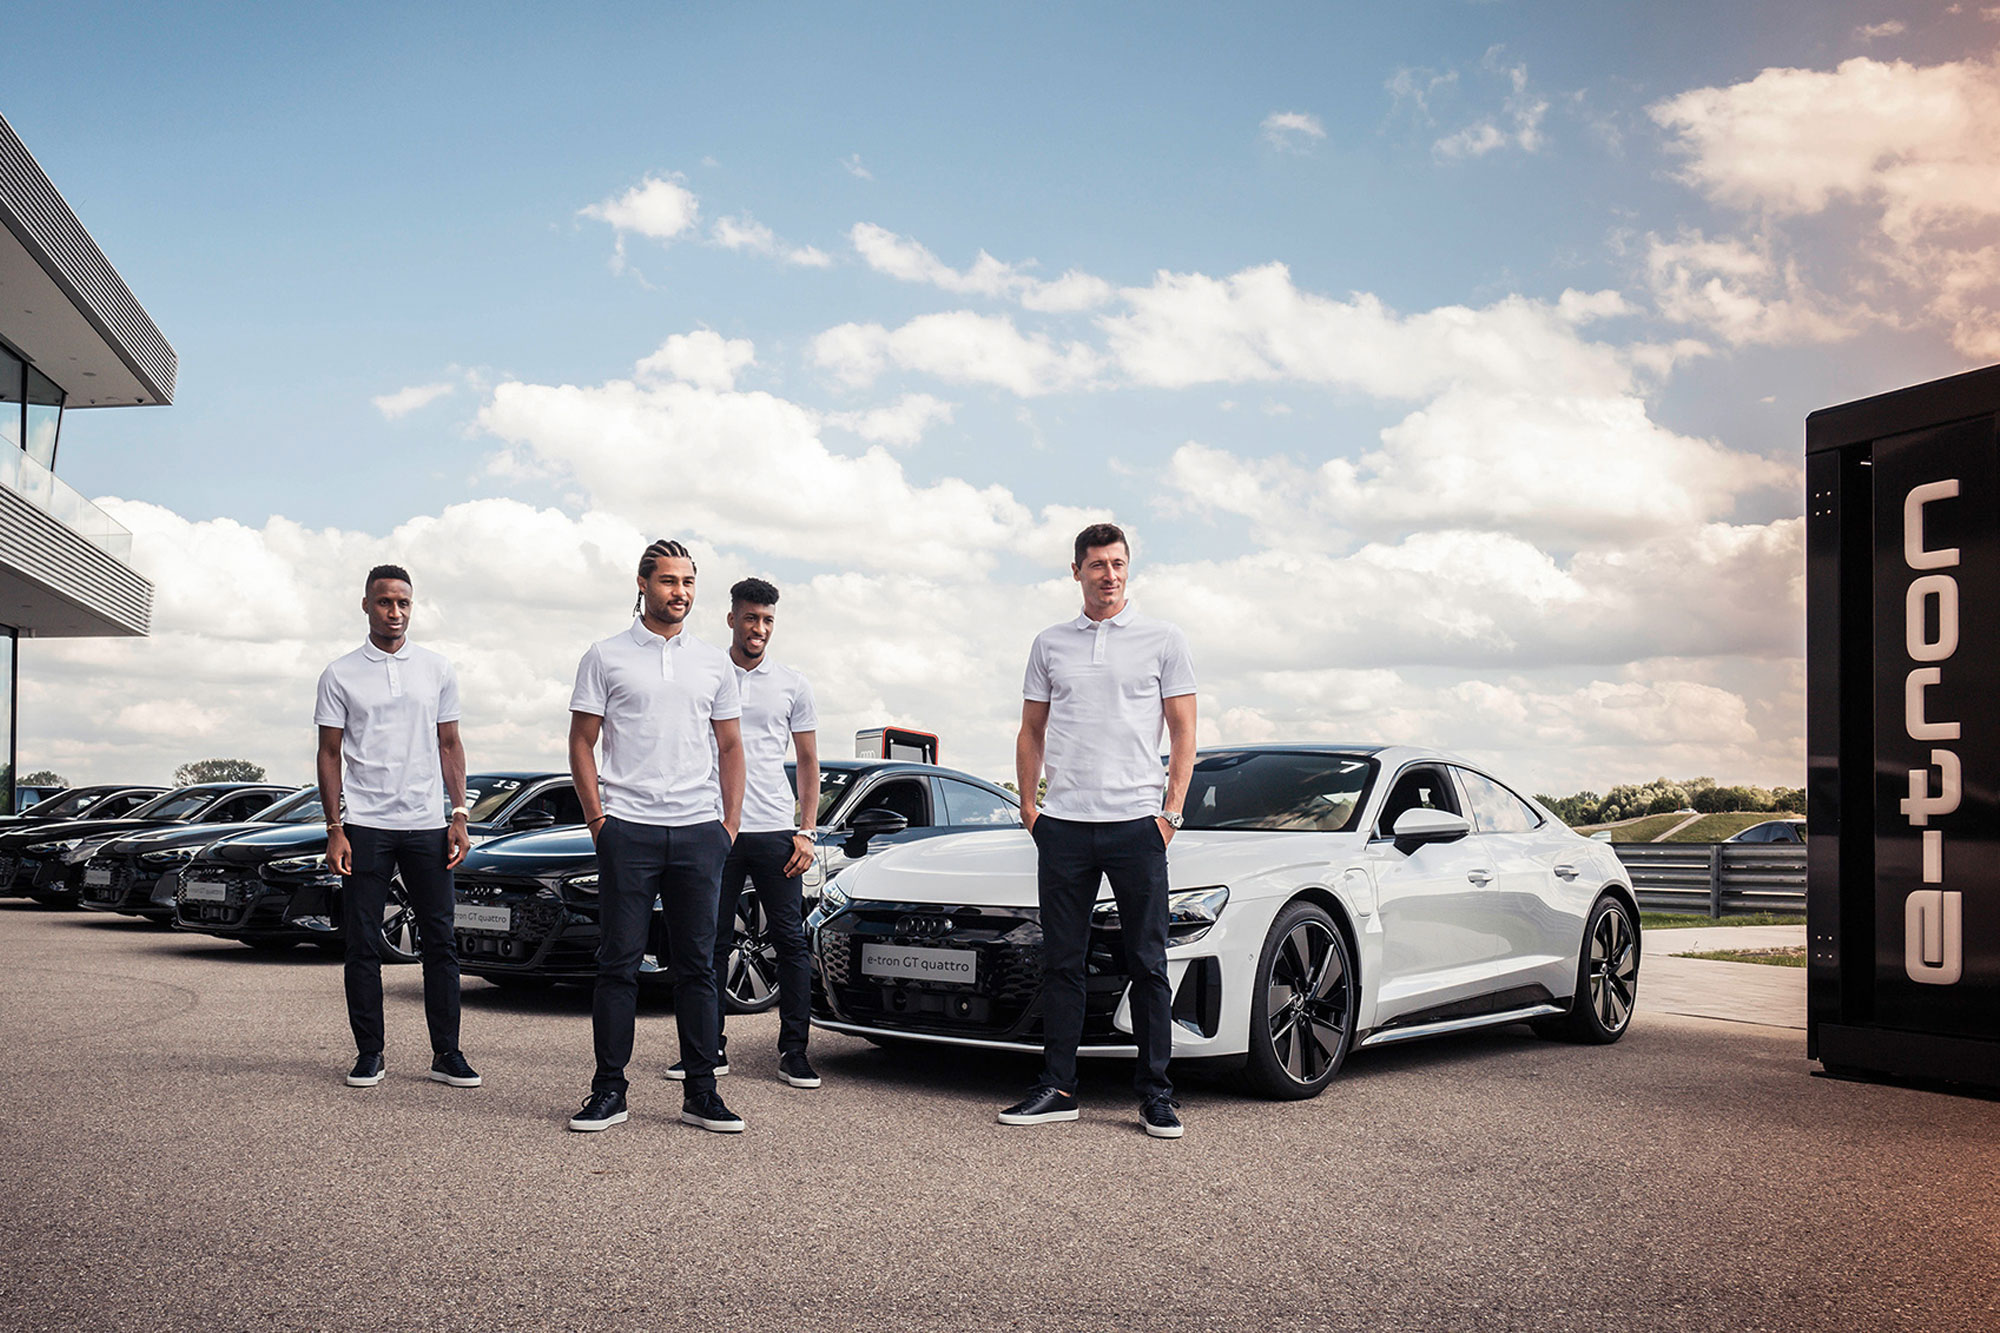 Οι ποδοσφαιριστές της FC Bayern οδηγούν Audi e-tron GT